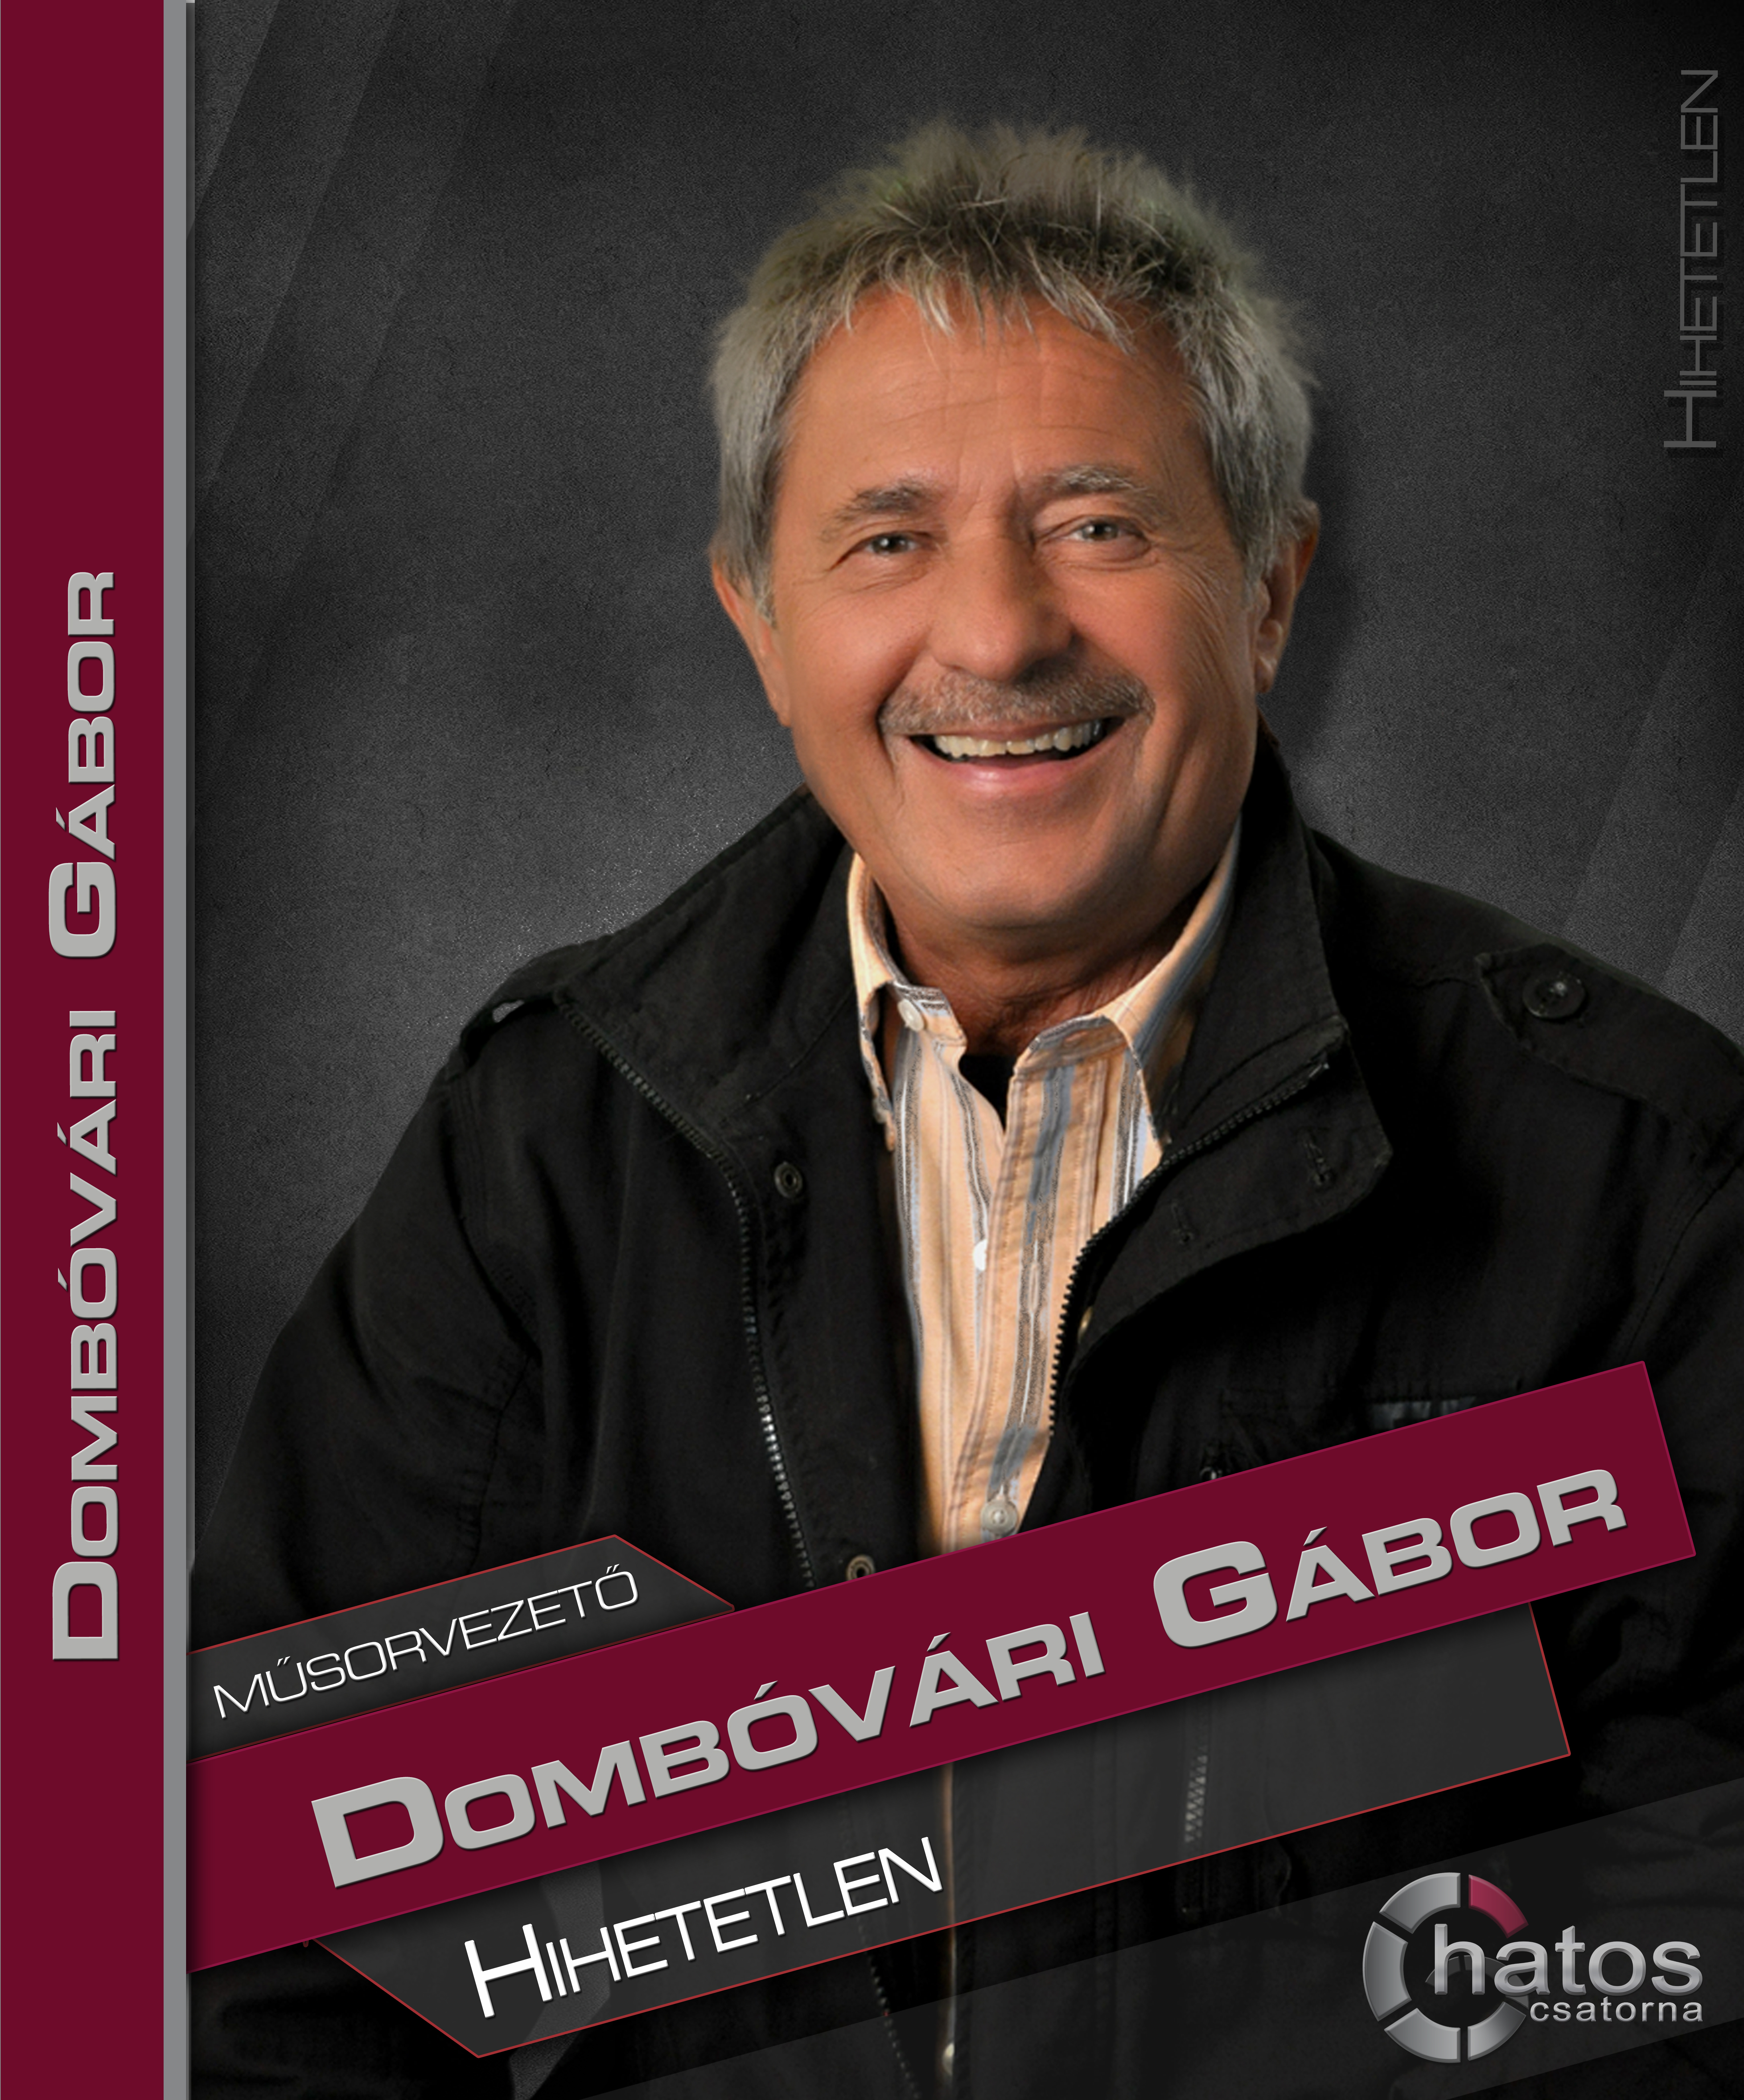 Dombóvári Gábor